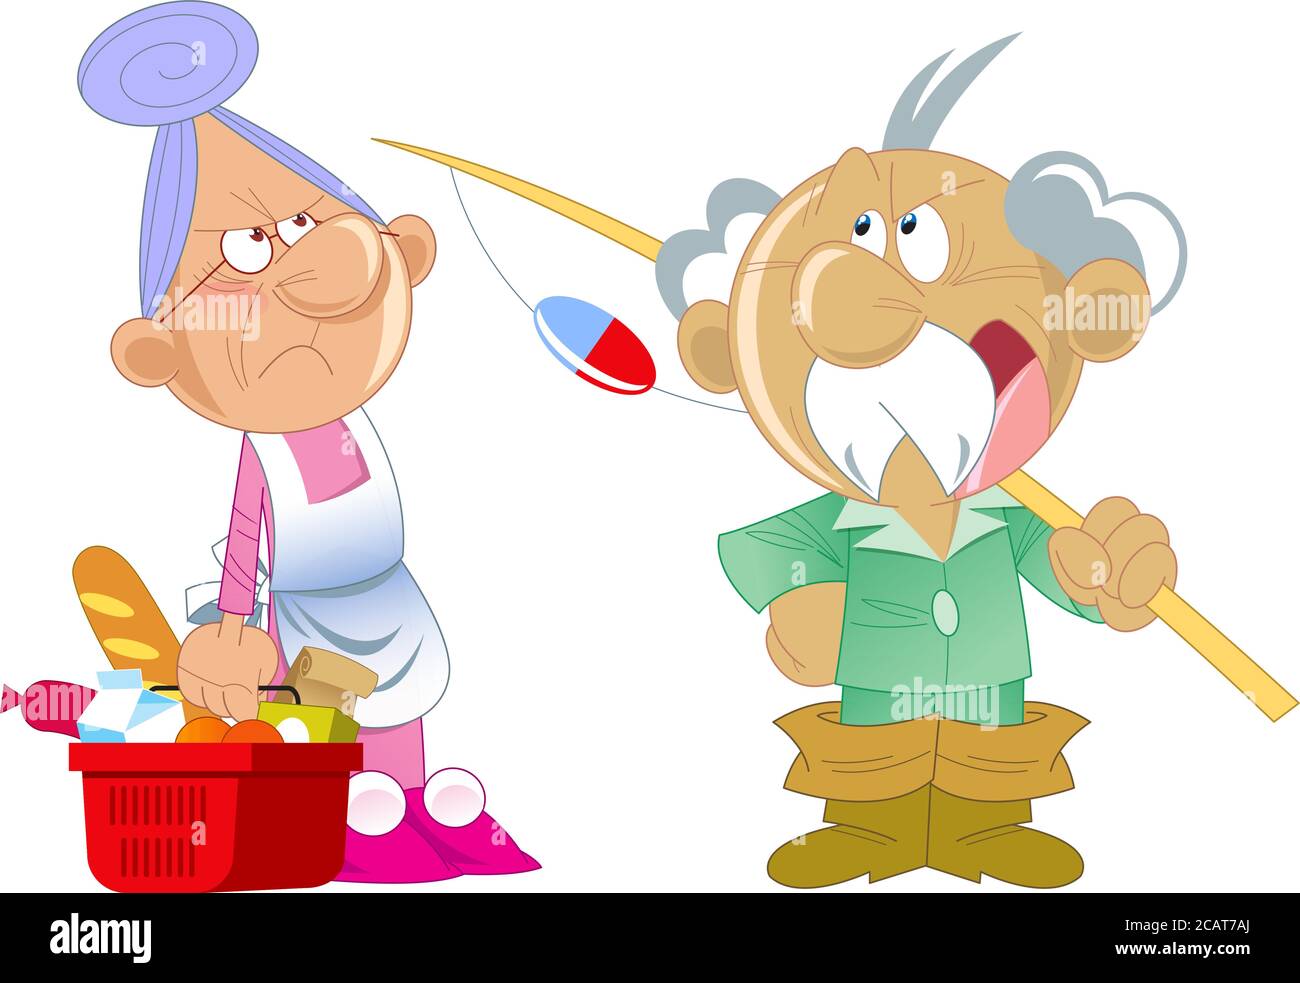 L'illustrazione vettoriale raffigura una coppia attiva anziana in stile cartoon. Nonna stava facendo acquisti al negozio, e nonno va a pescare. Illustrazione Vettoriale